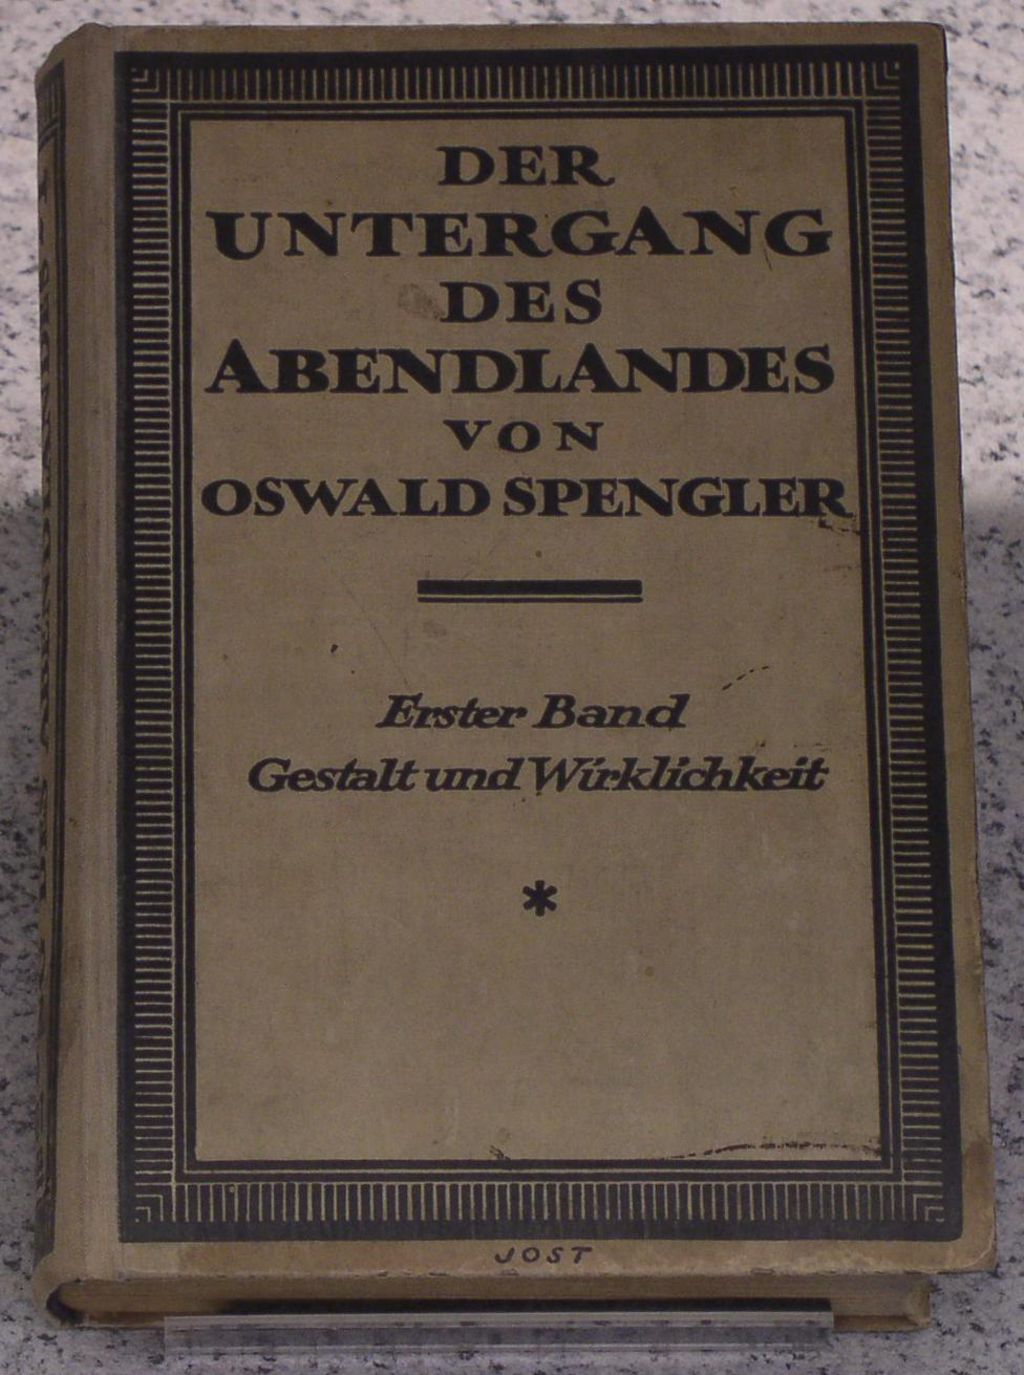 Buch: Oswald Spengler: "Der Untergang des Abendlandes", 1922